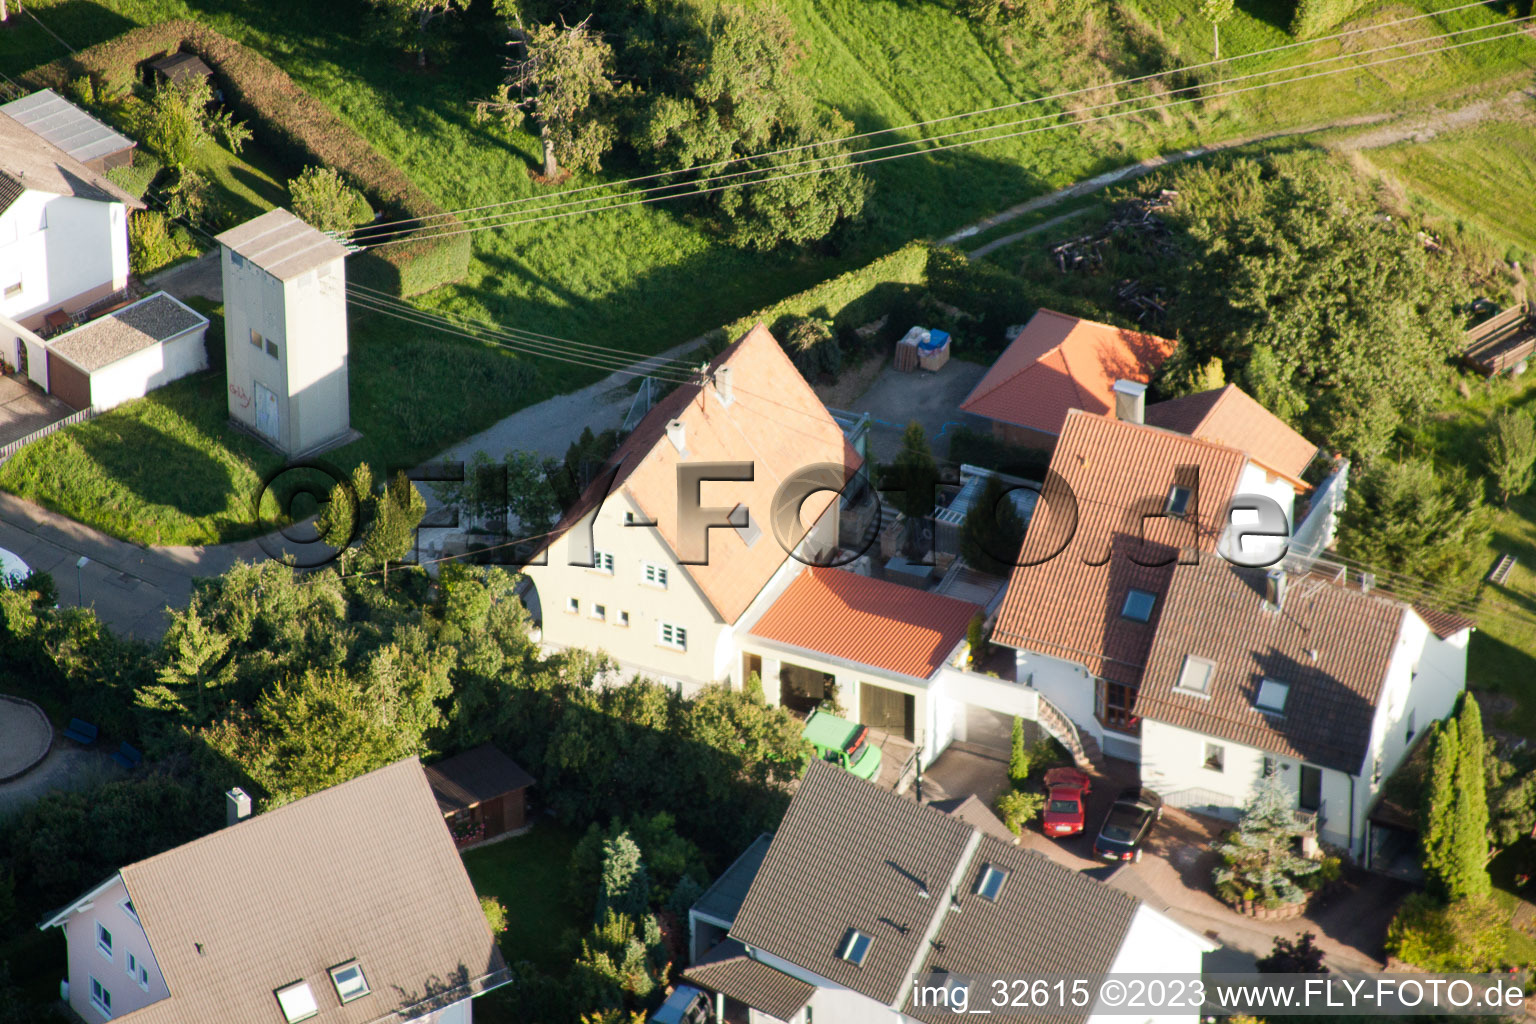 Gräfenhausen im Bundesland Baden-Württemberg, Deutschland aus der Drohnenperspektive